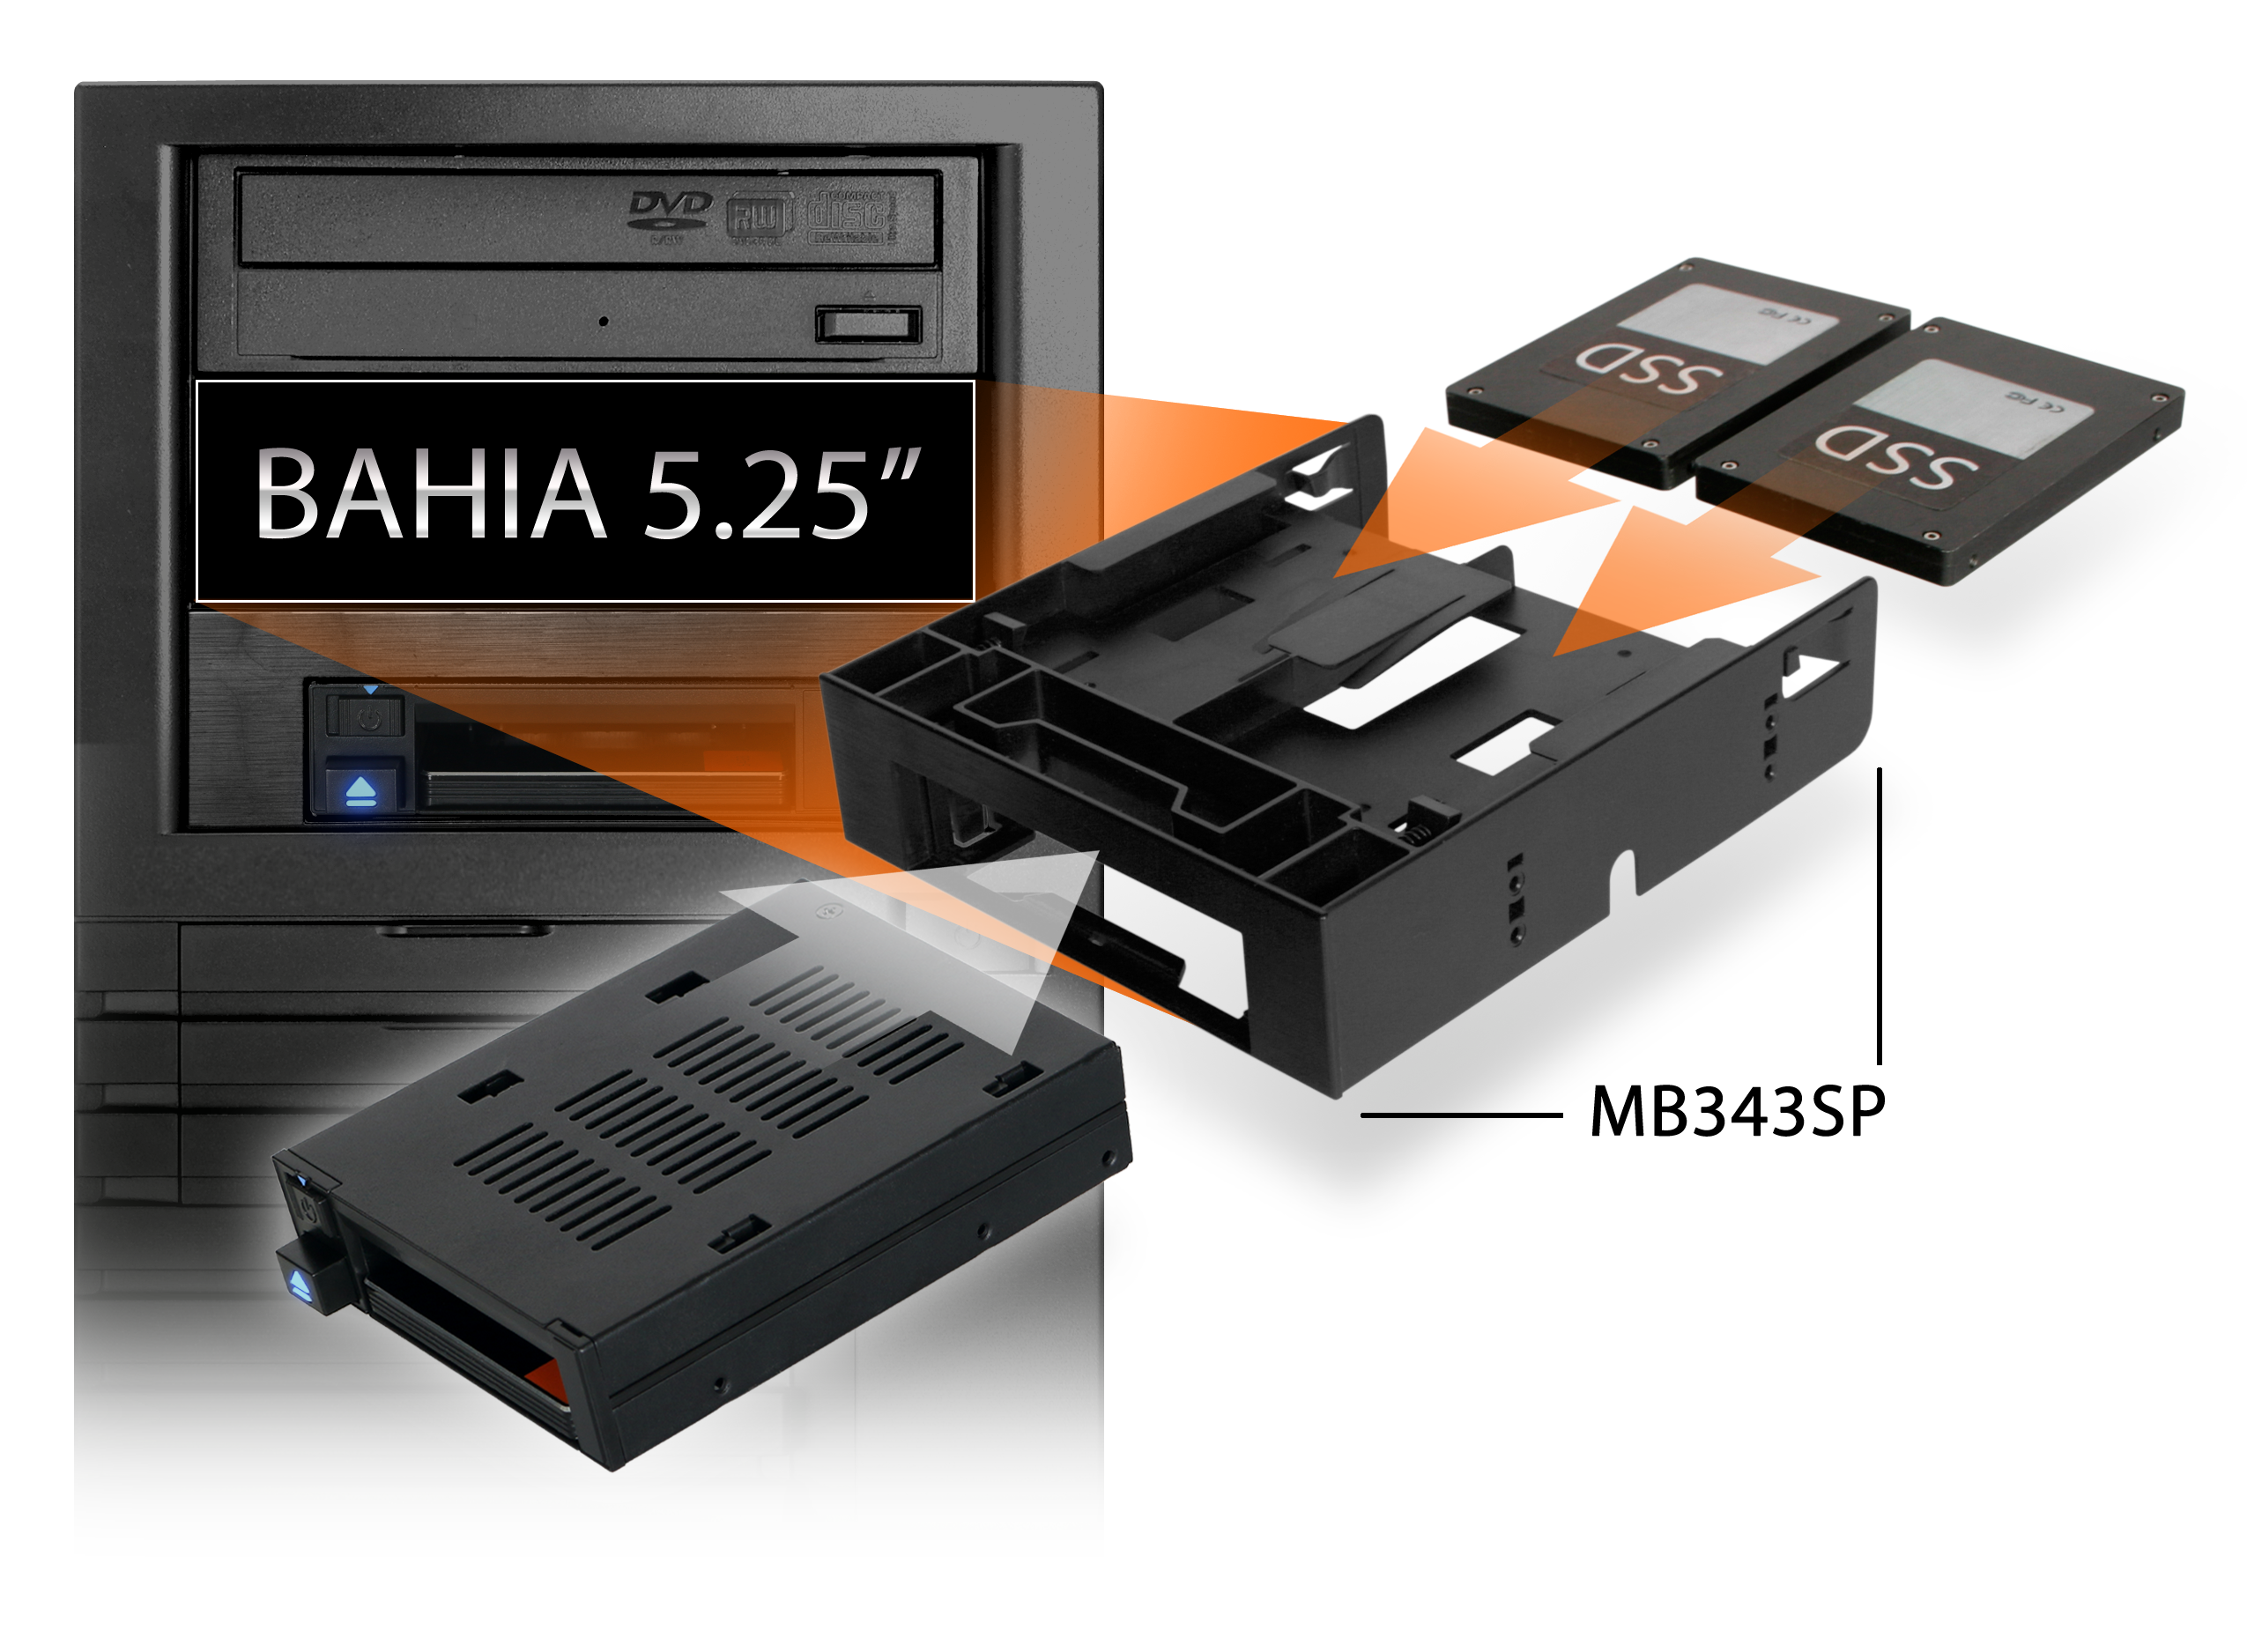 Foto del MB343SP-B listo para ser insertado en un rack de 5,25 con 2 SSDs